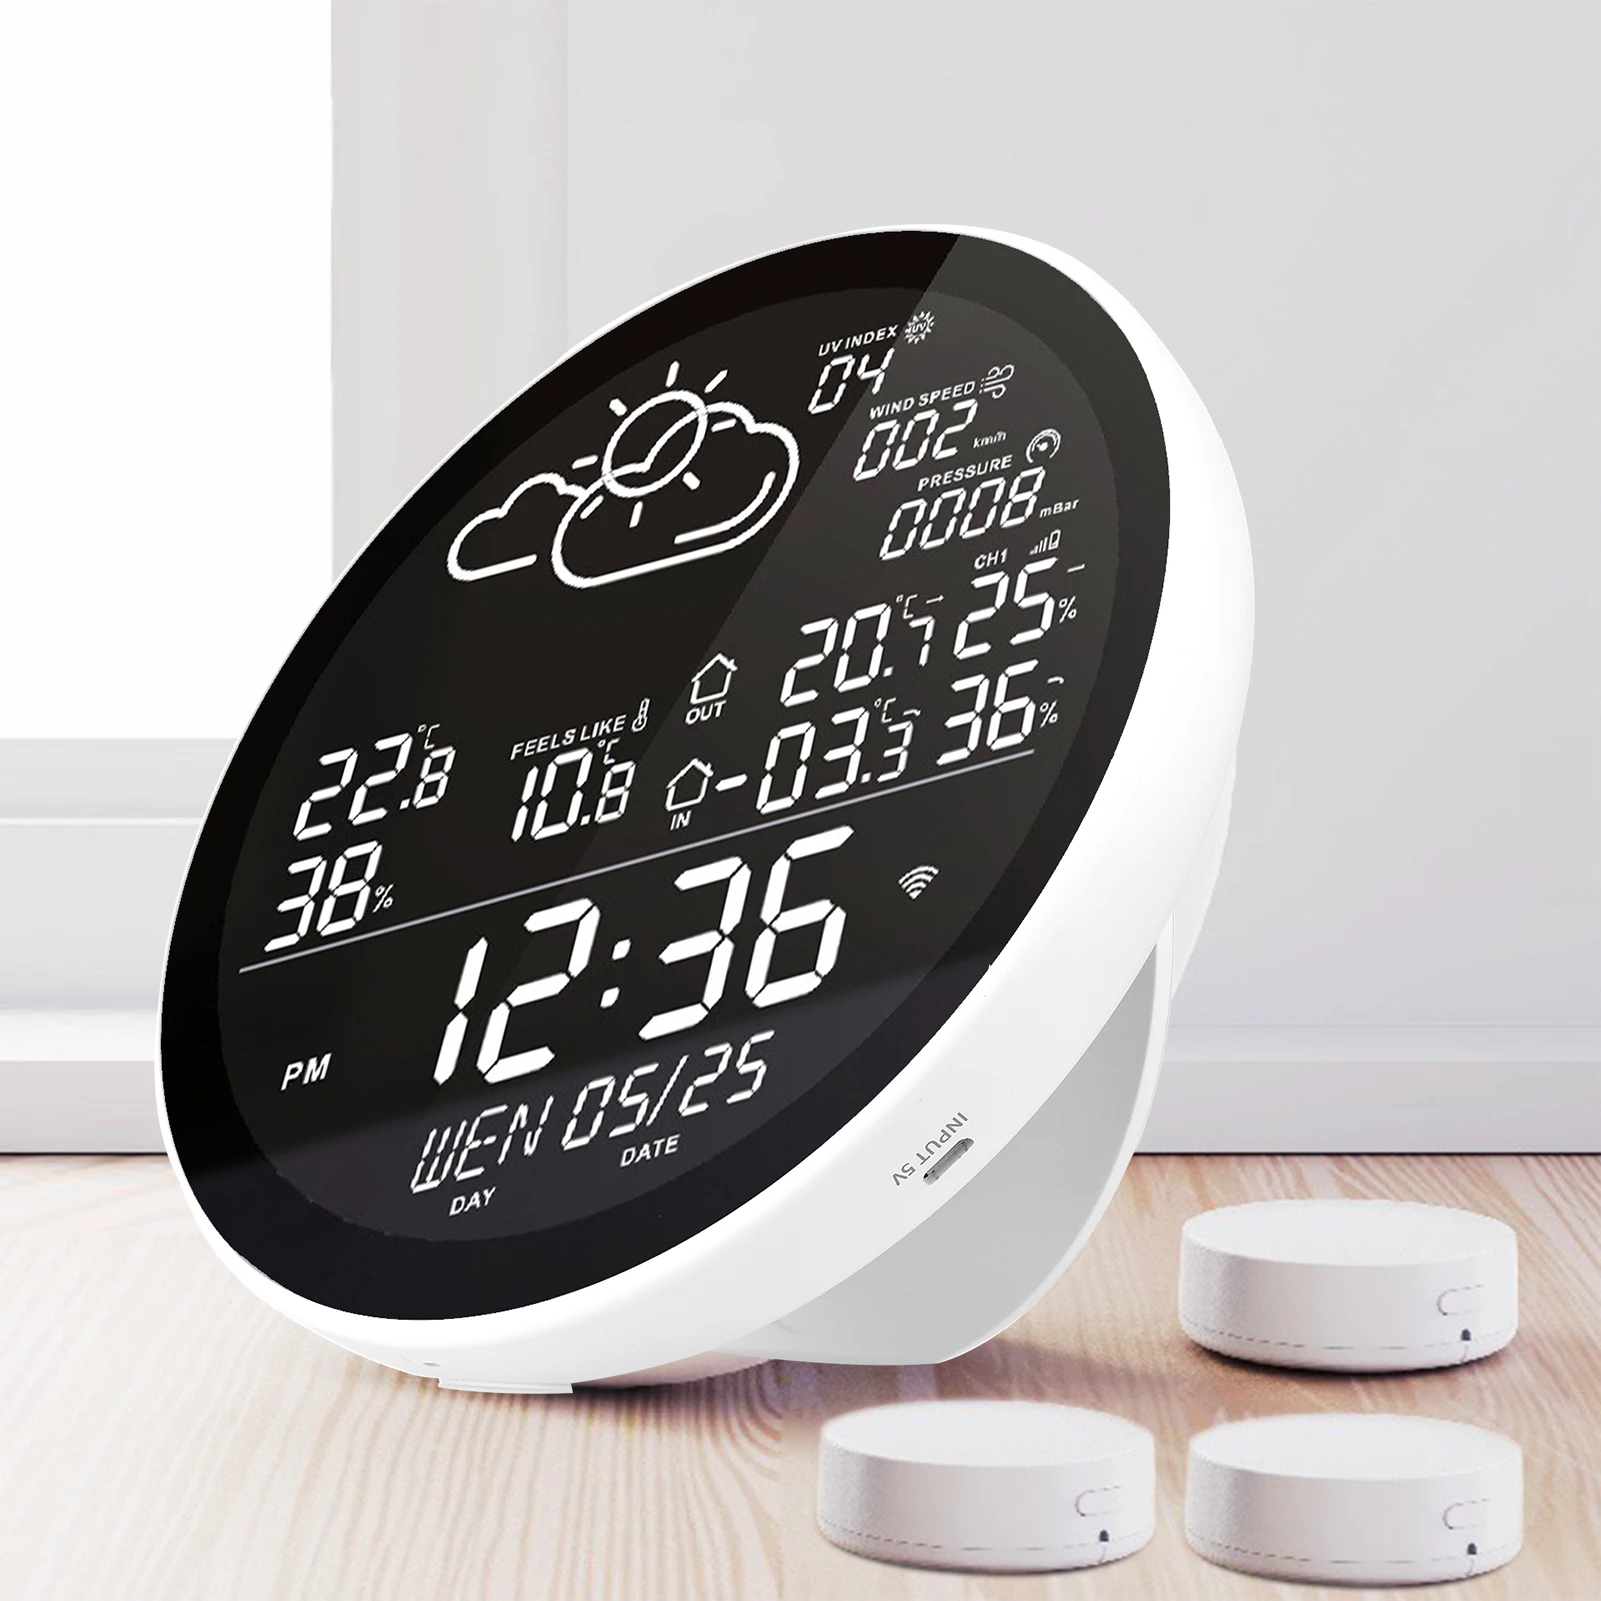 

Умная Метеостанция Tuya с Wi-Fi, Многофункциональный измеритель температуры и влажности, погодные часы с большим цветным экраном и датчиком